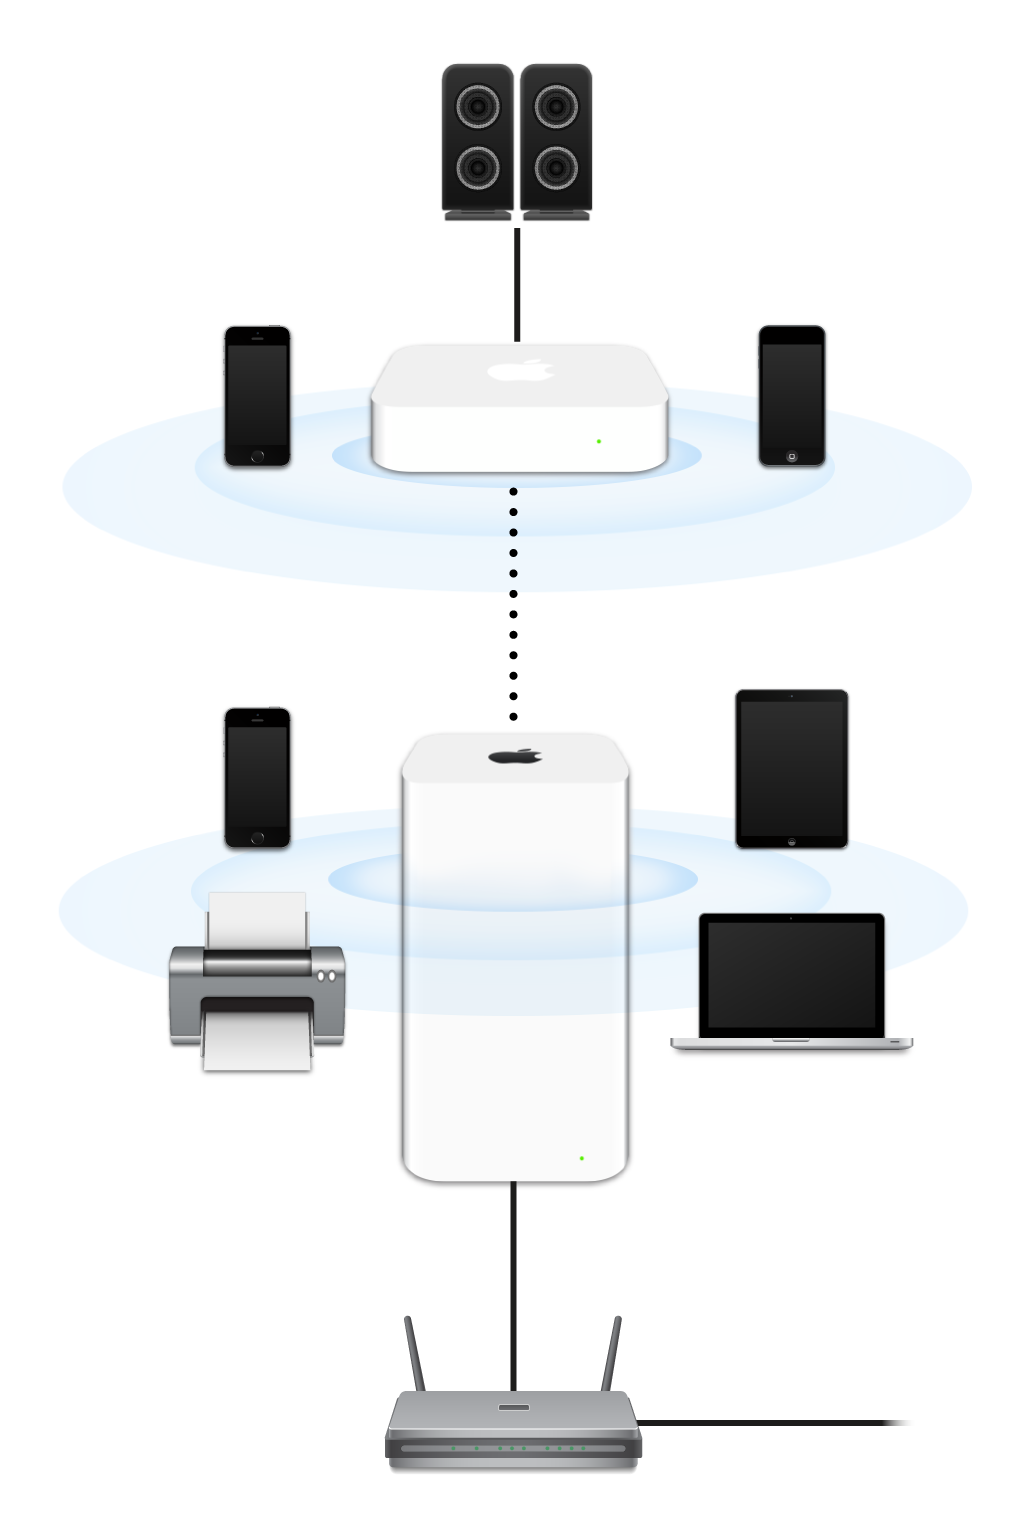 Розширена мережа, яка включає базові станції AirPort Extreme і AirPort Express, які під’єднані до модема й передають сигнал на різні пристрої.